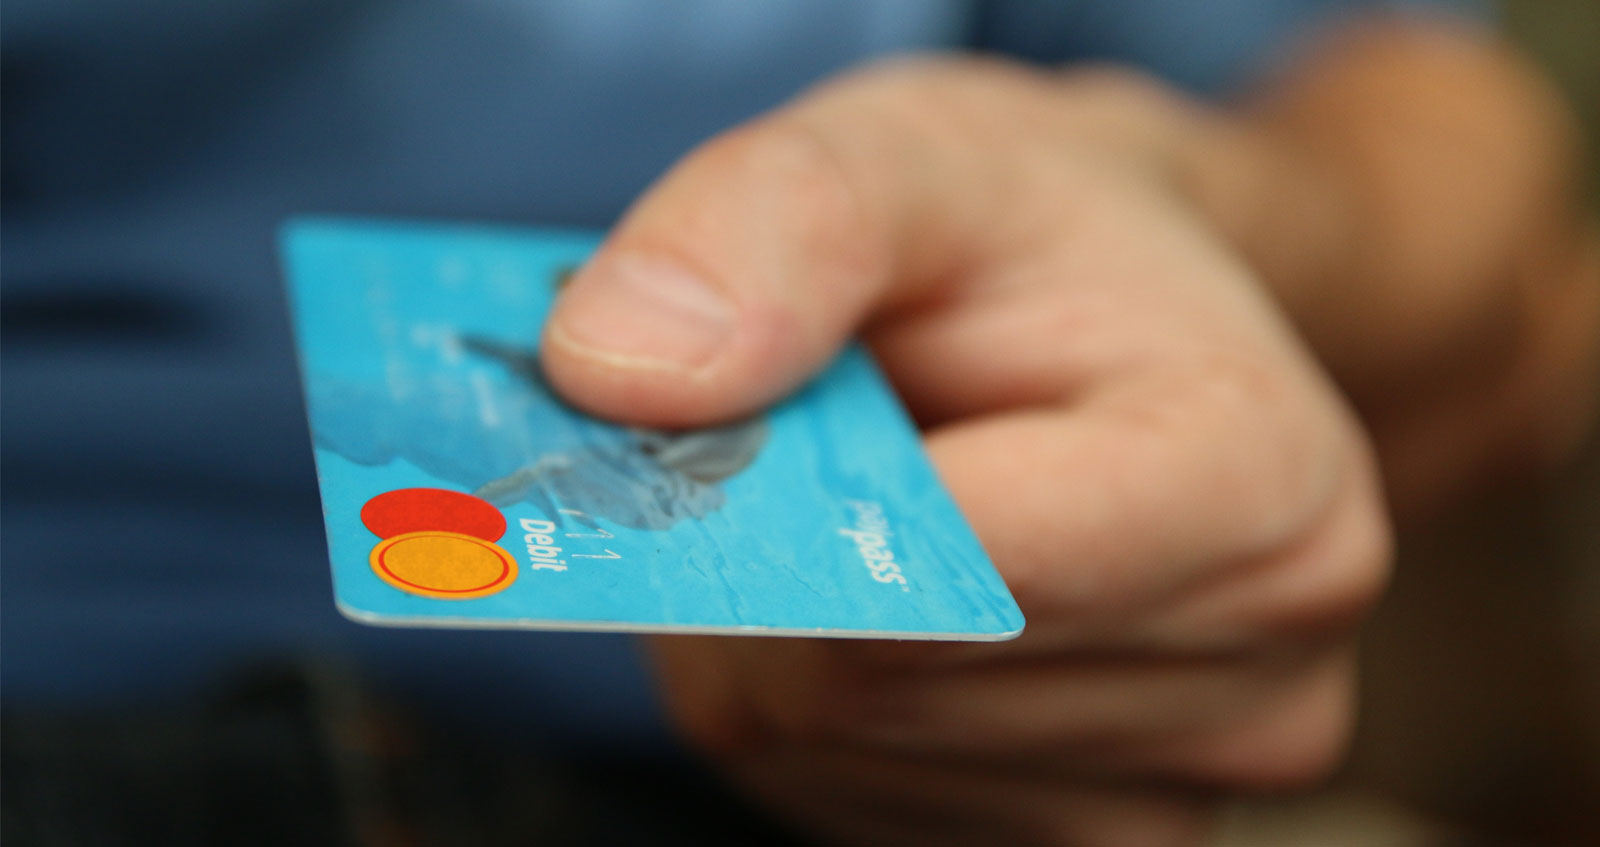 Debit card fees